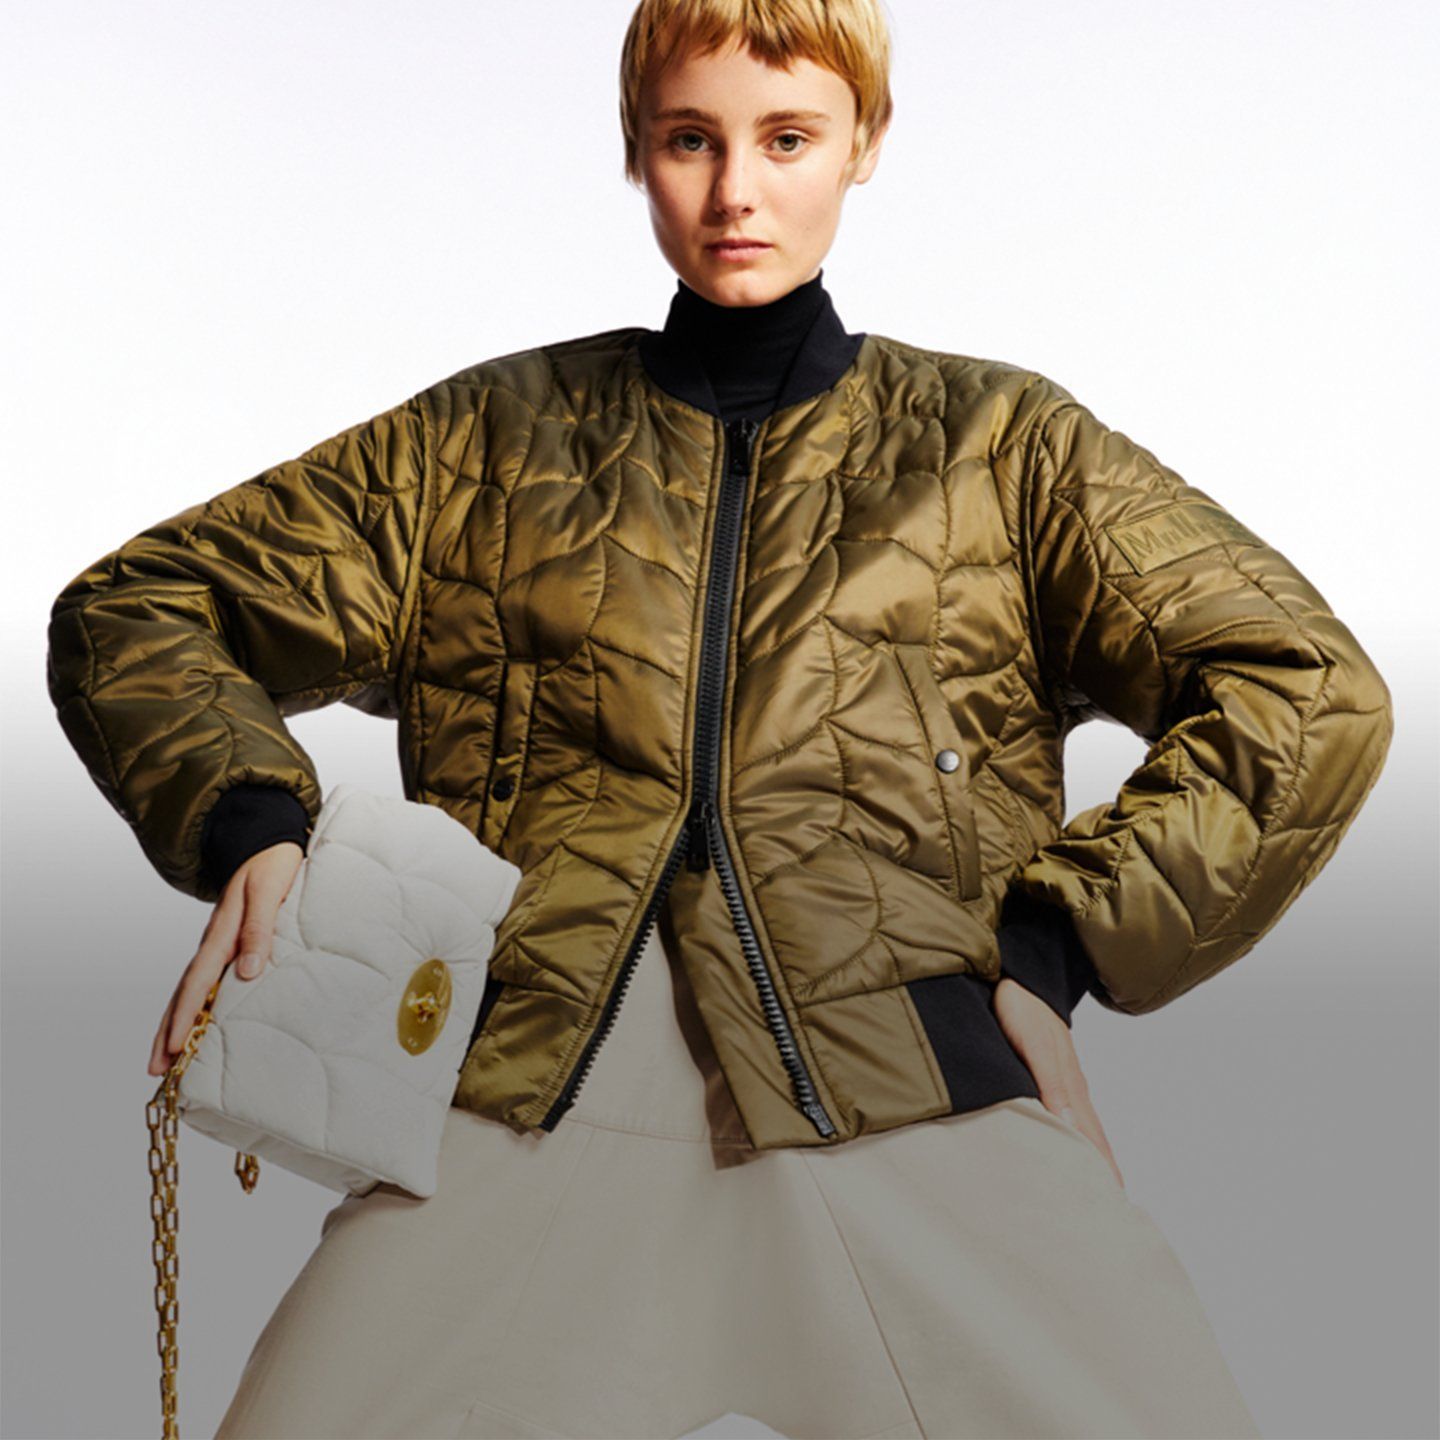 Mulberry softie 봄버 재킷과 화이트 softie 백을 착용한 모델